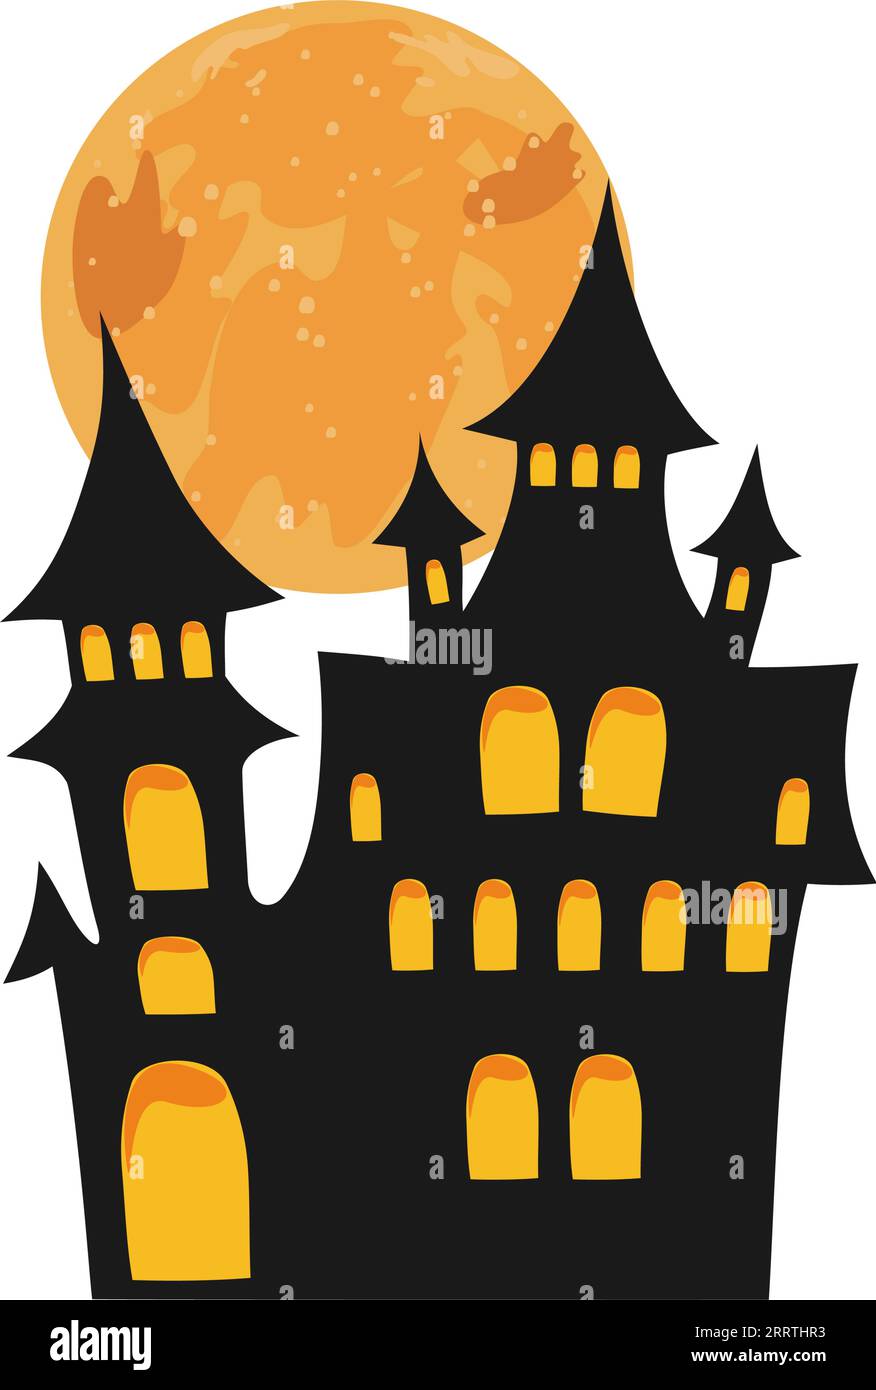 Castillo de Halloween con luna llena. Silueta de casa embrujada negra. Elemento de diseño de Halloween. Plantilla gráfica aislada. Ilustración vectorial. Ilustración del Vector